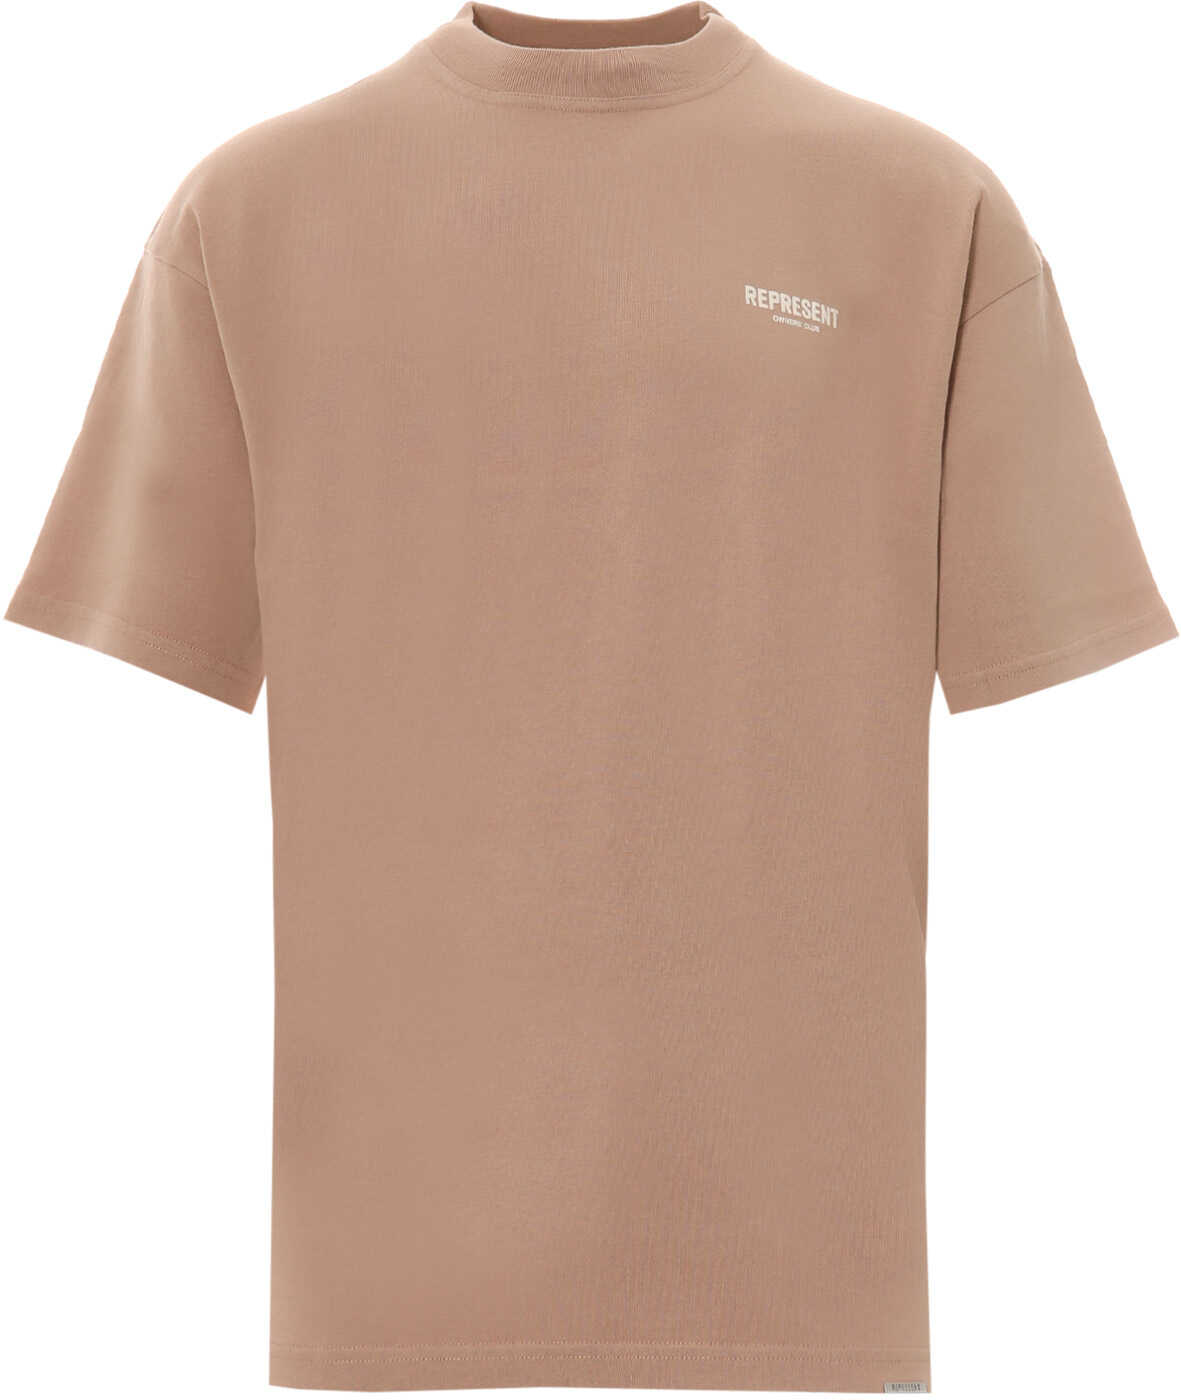 REPRESENT T-Shirt Brown